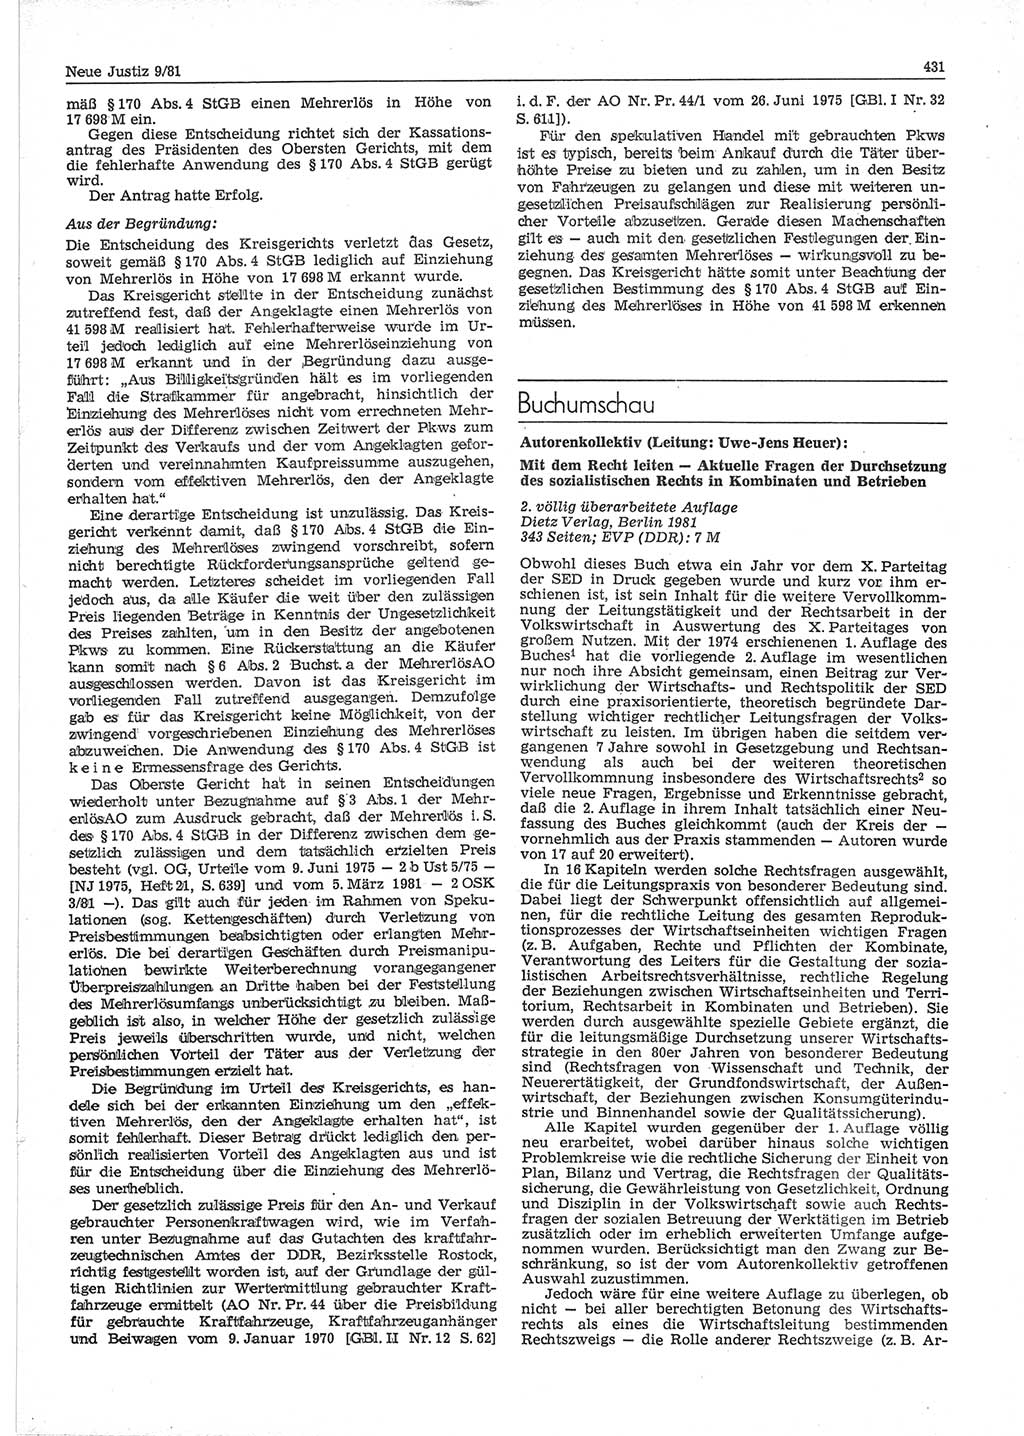 Neue Justiz (NJ), Zeitschrift für sozialistisches Recht und Gesetzlichkeit [Deutsche Demokratische Republik (DDR)], 35. Jahrgang 1981, Seite 431 (NJ DDR 1981, S. 431)